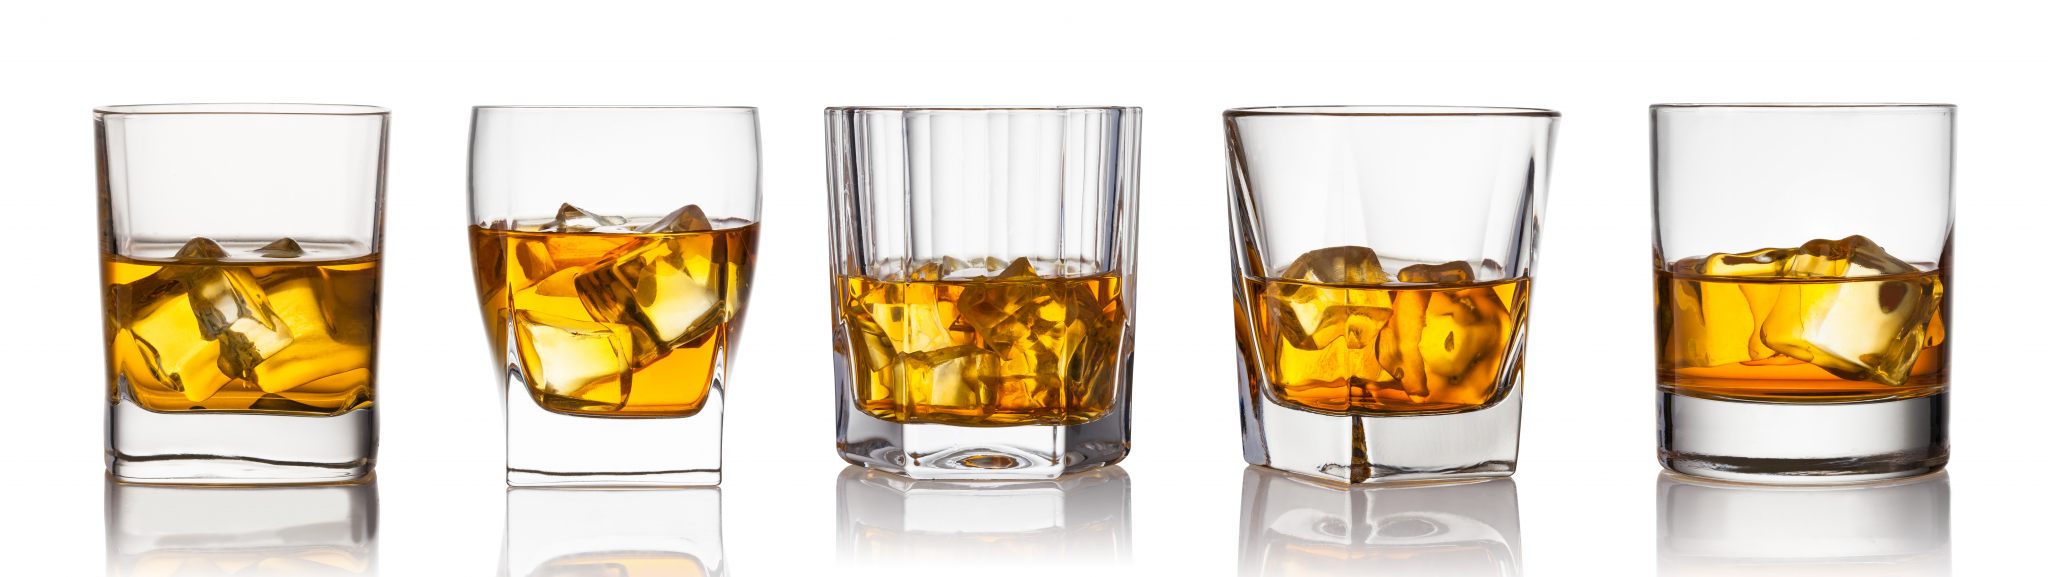 Bicchiere da whisky: qual è il più adatto? - Dissapore